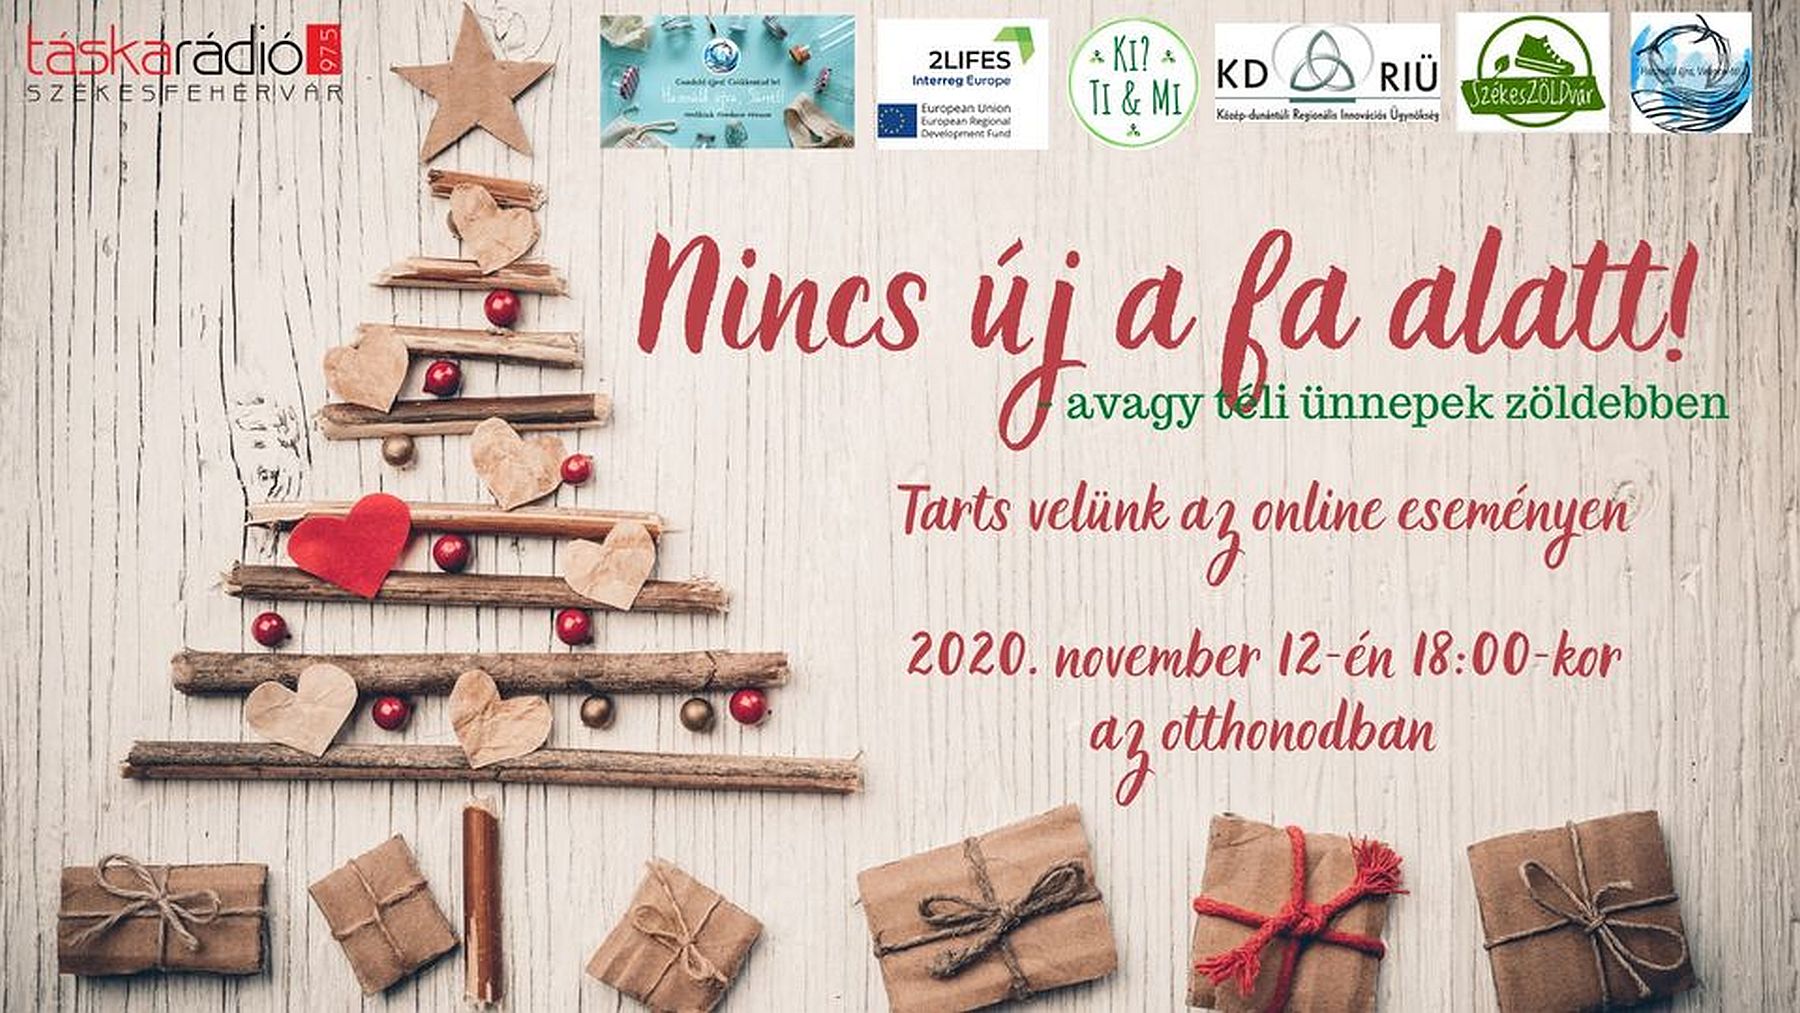 Nincs új a fa alatt!-téli ünnepek zöldebben - online előadás a Ki? - Ti&Mi csoporttal